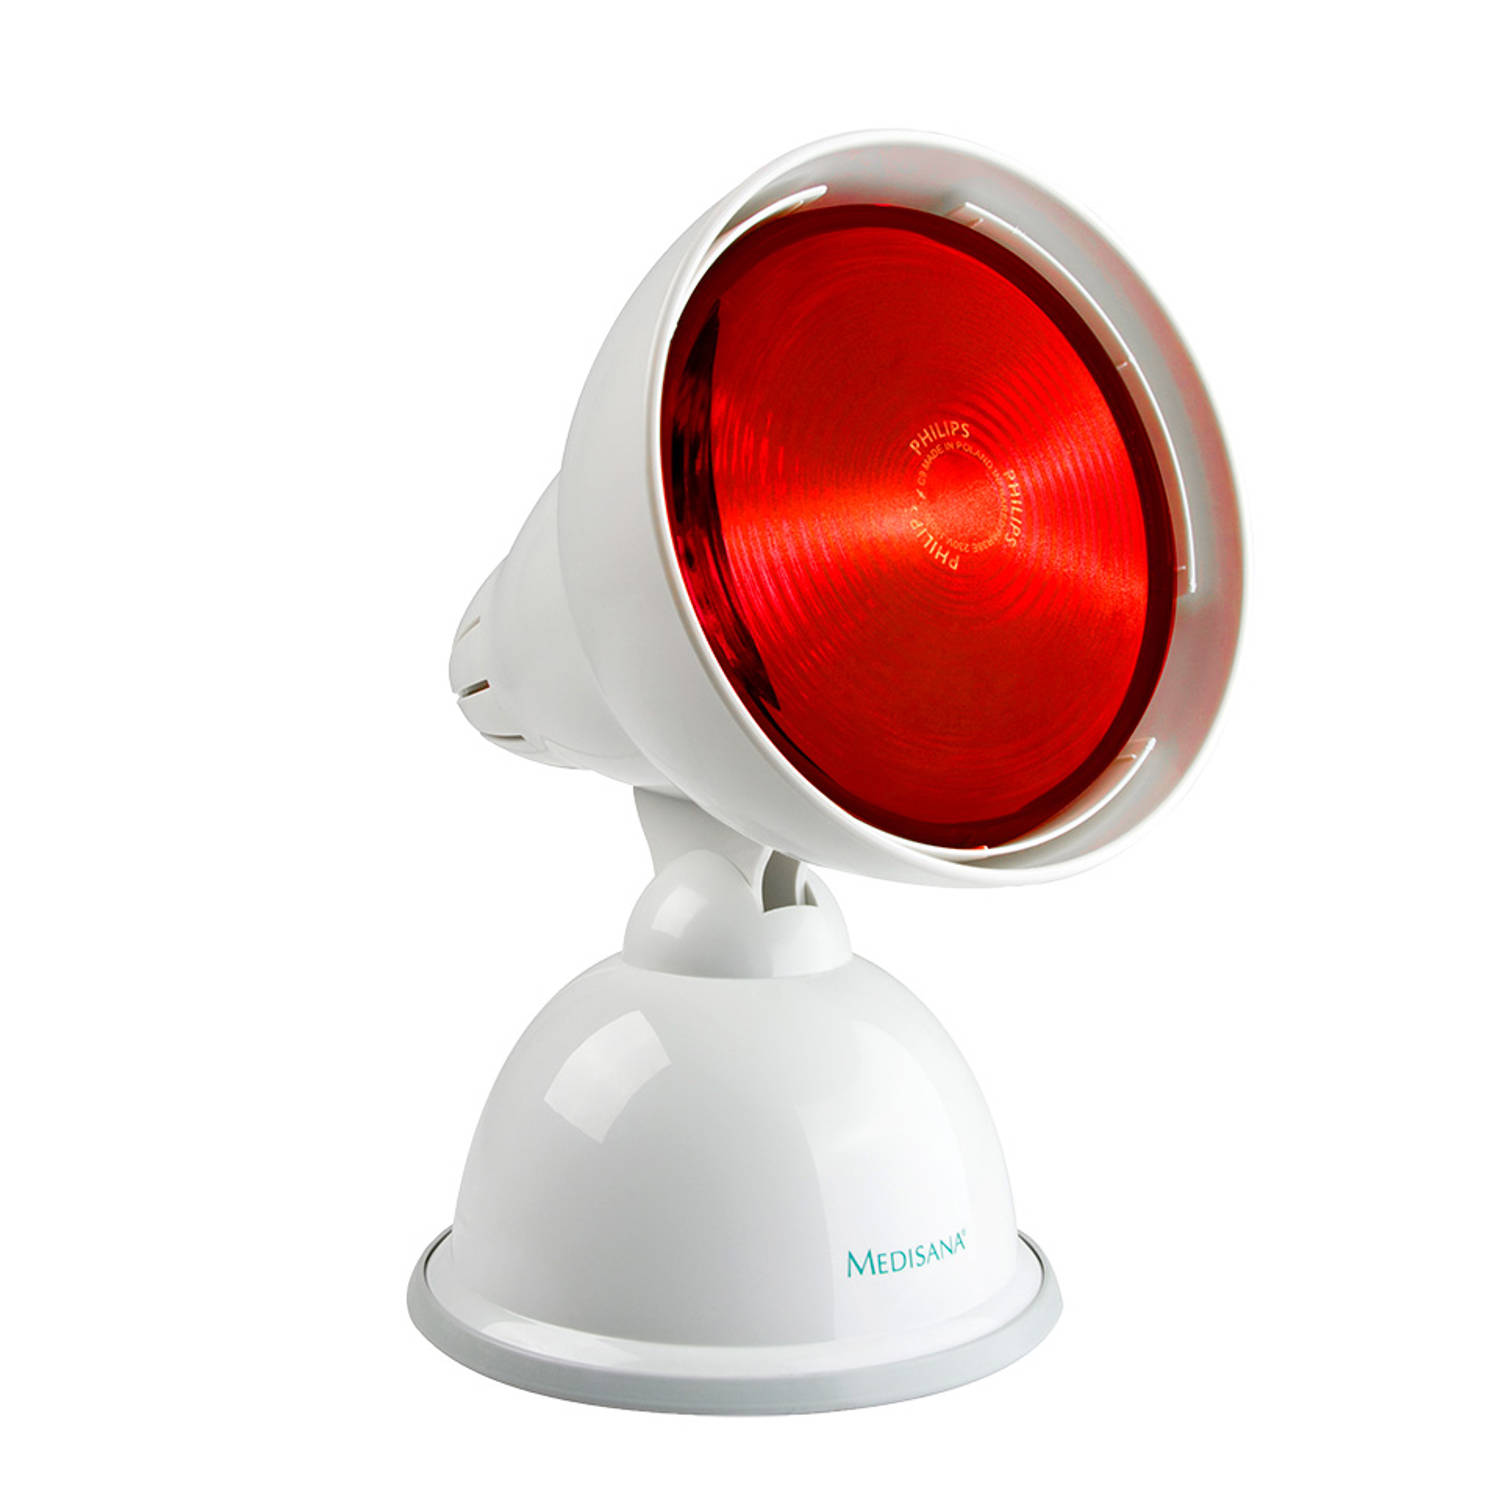 Kom langs om het te weten oppakken Simuleren Medisana infrarood lamp irl | Blokker